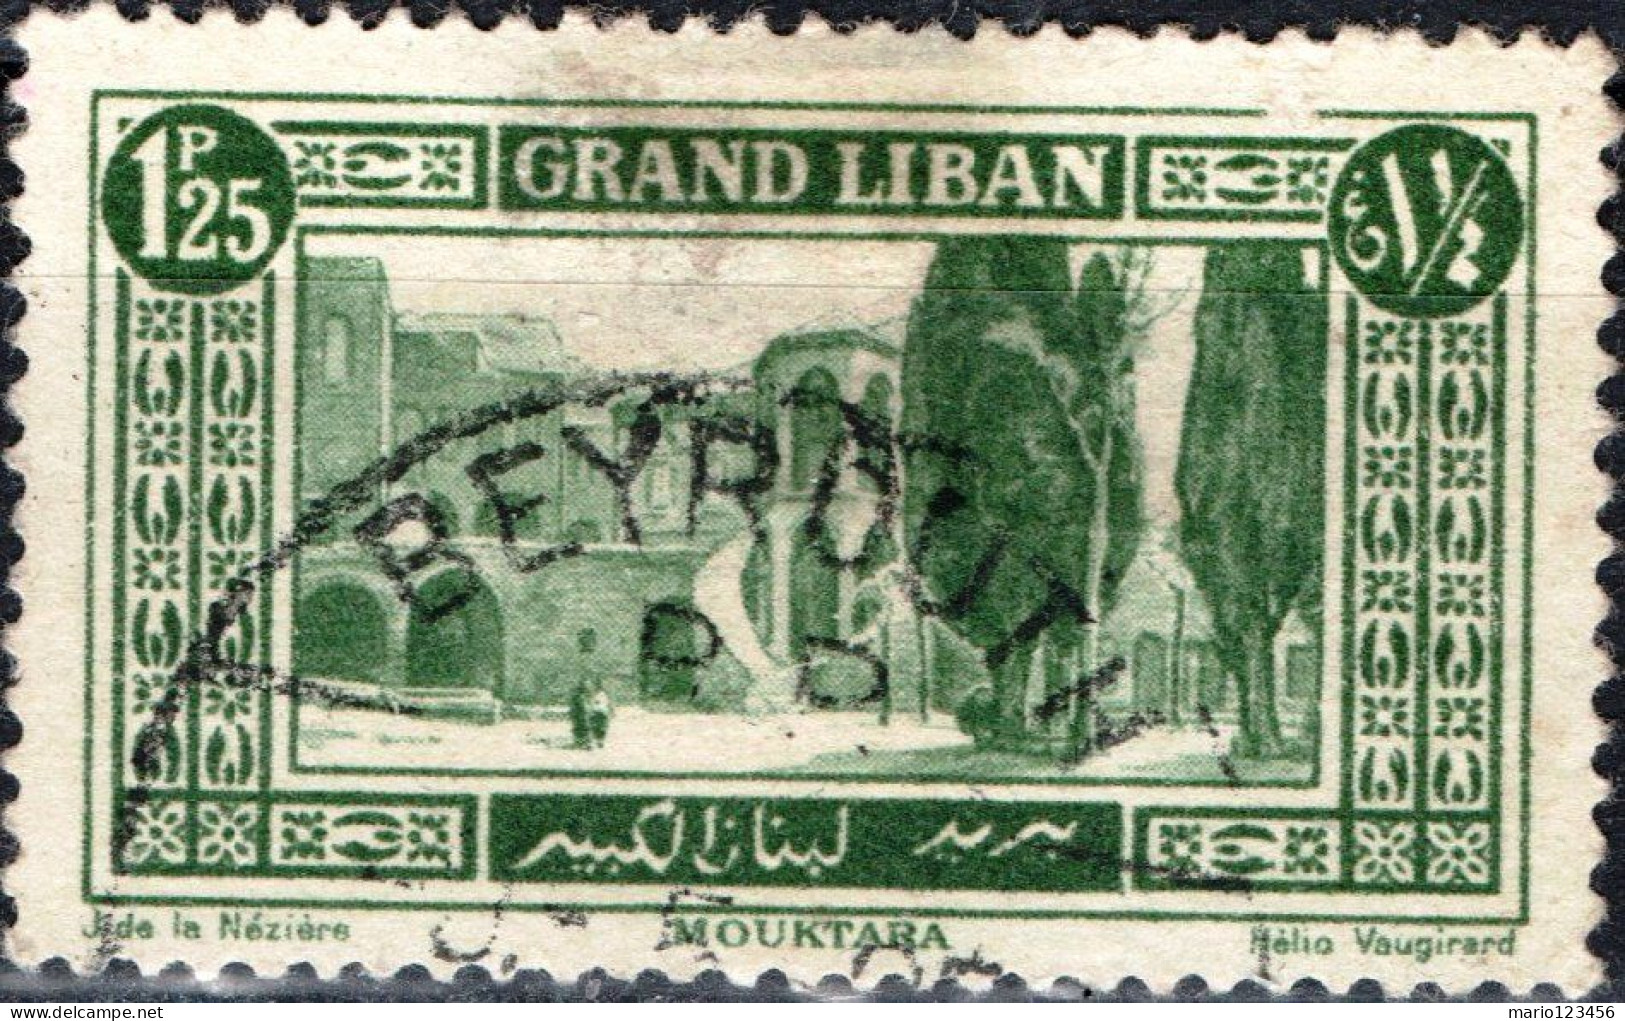 LIBANO, LEBANON, PAESAGGI, LANDSCAPES, 1925, USATI Scott:LB 55, Yt:FR-LB 55 - Oblitérés